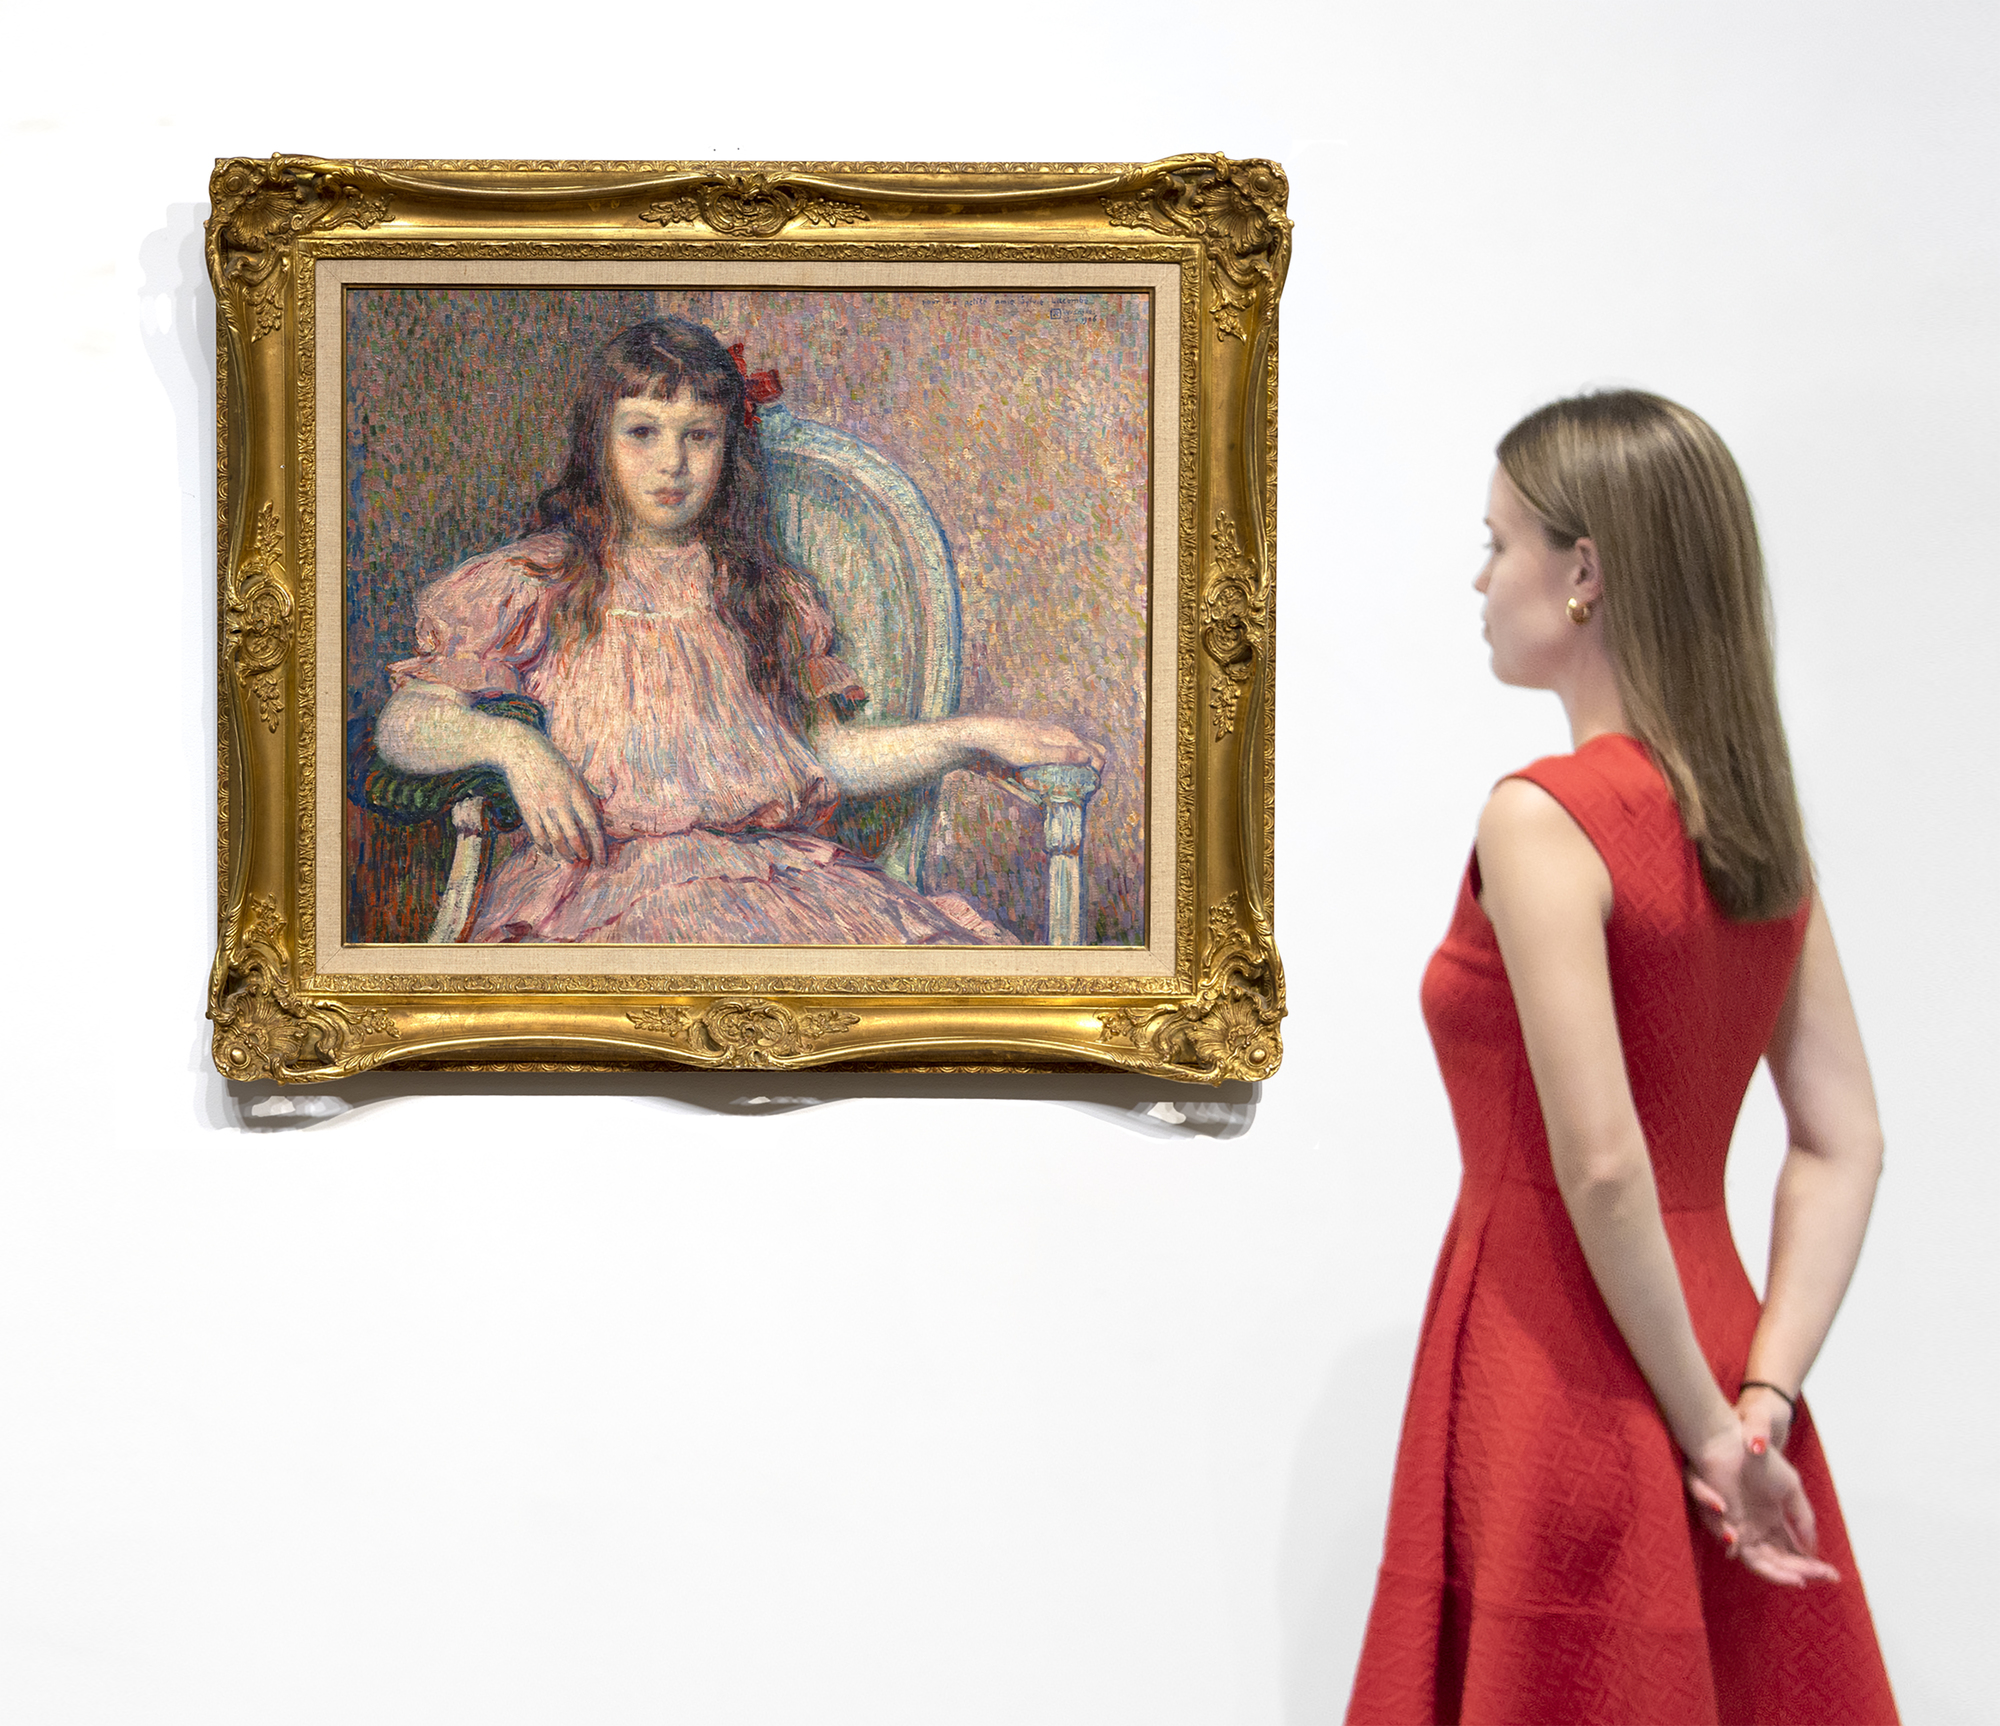 تعد صورة Théo van Rysselberghe Portrait de Sylvie Lacombe ، التي رسمت في عام 1906 ، تحفة كلاسيكية من قبل أحد أكثر رسامي الصور دقة واتساقا في عصره. اللون متناغم ، والفرشاة قوية ومصممة خصيصا لمهمتها المادية ، وجسدها ووجهها حقيقي وكاشف. الحاضنة هي ابنة صديقه العزيز ، الرسام جورج لاكومب ، الذي شارك في ارتباط وثيق مع غوغان ، وكان عضوا في Les Nabis مع الفنانين Bonnard و Denis و Vuillard ، من بين آخرين. نحن نعرف الآن عن سيلفي لاكومب لأن فان ريسلبرغ ماهرة جدا في تقديم تعبيرات الوجه الدقيقة ومن خلال الملاحظة الدقيقة والاهتمام بالتفاصيل ، قدمت رؤى حول عالمها الداخلي. لقد اختار نظرة مباشرة ، عينيها إلى عينيك ، عهدا لا مفر منه بين الموضوع والمشاهد بغض النظر عن علاقتنا الجسدية باللوحة. تخلى فان ريسلبرغ إلى حد كبير عن تقنية Pointillist عندما رسم هذه الصورة. لكنه استمر في تطبيق إرشادات نظرية الألوان باستخدام صبغات من اللون الأحمر - الوردي والماوفي - ضد اللون الأخضر لإنشاء لوحة محسنة متناغمة من الألوان التكميلية التي أضاف إليها لهجة قوية لجذب العين - قوس أحمر مشبع بشكل مكثف تم وضعه بشكل غير متماثل على جانب رأسها.